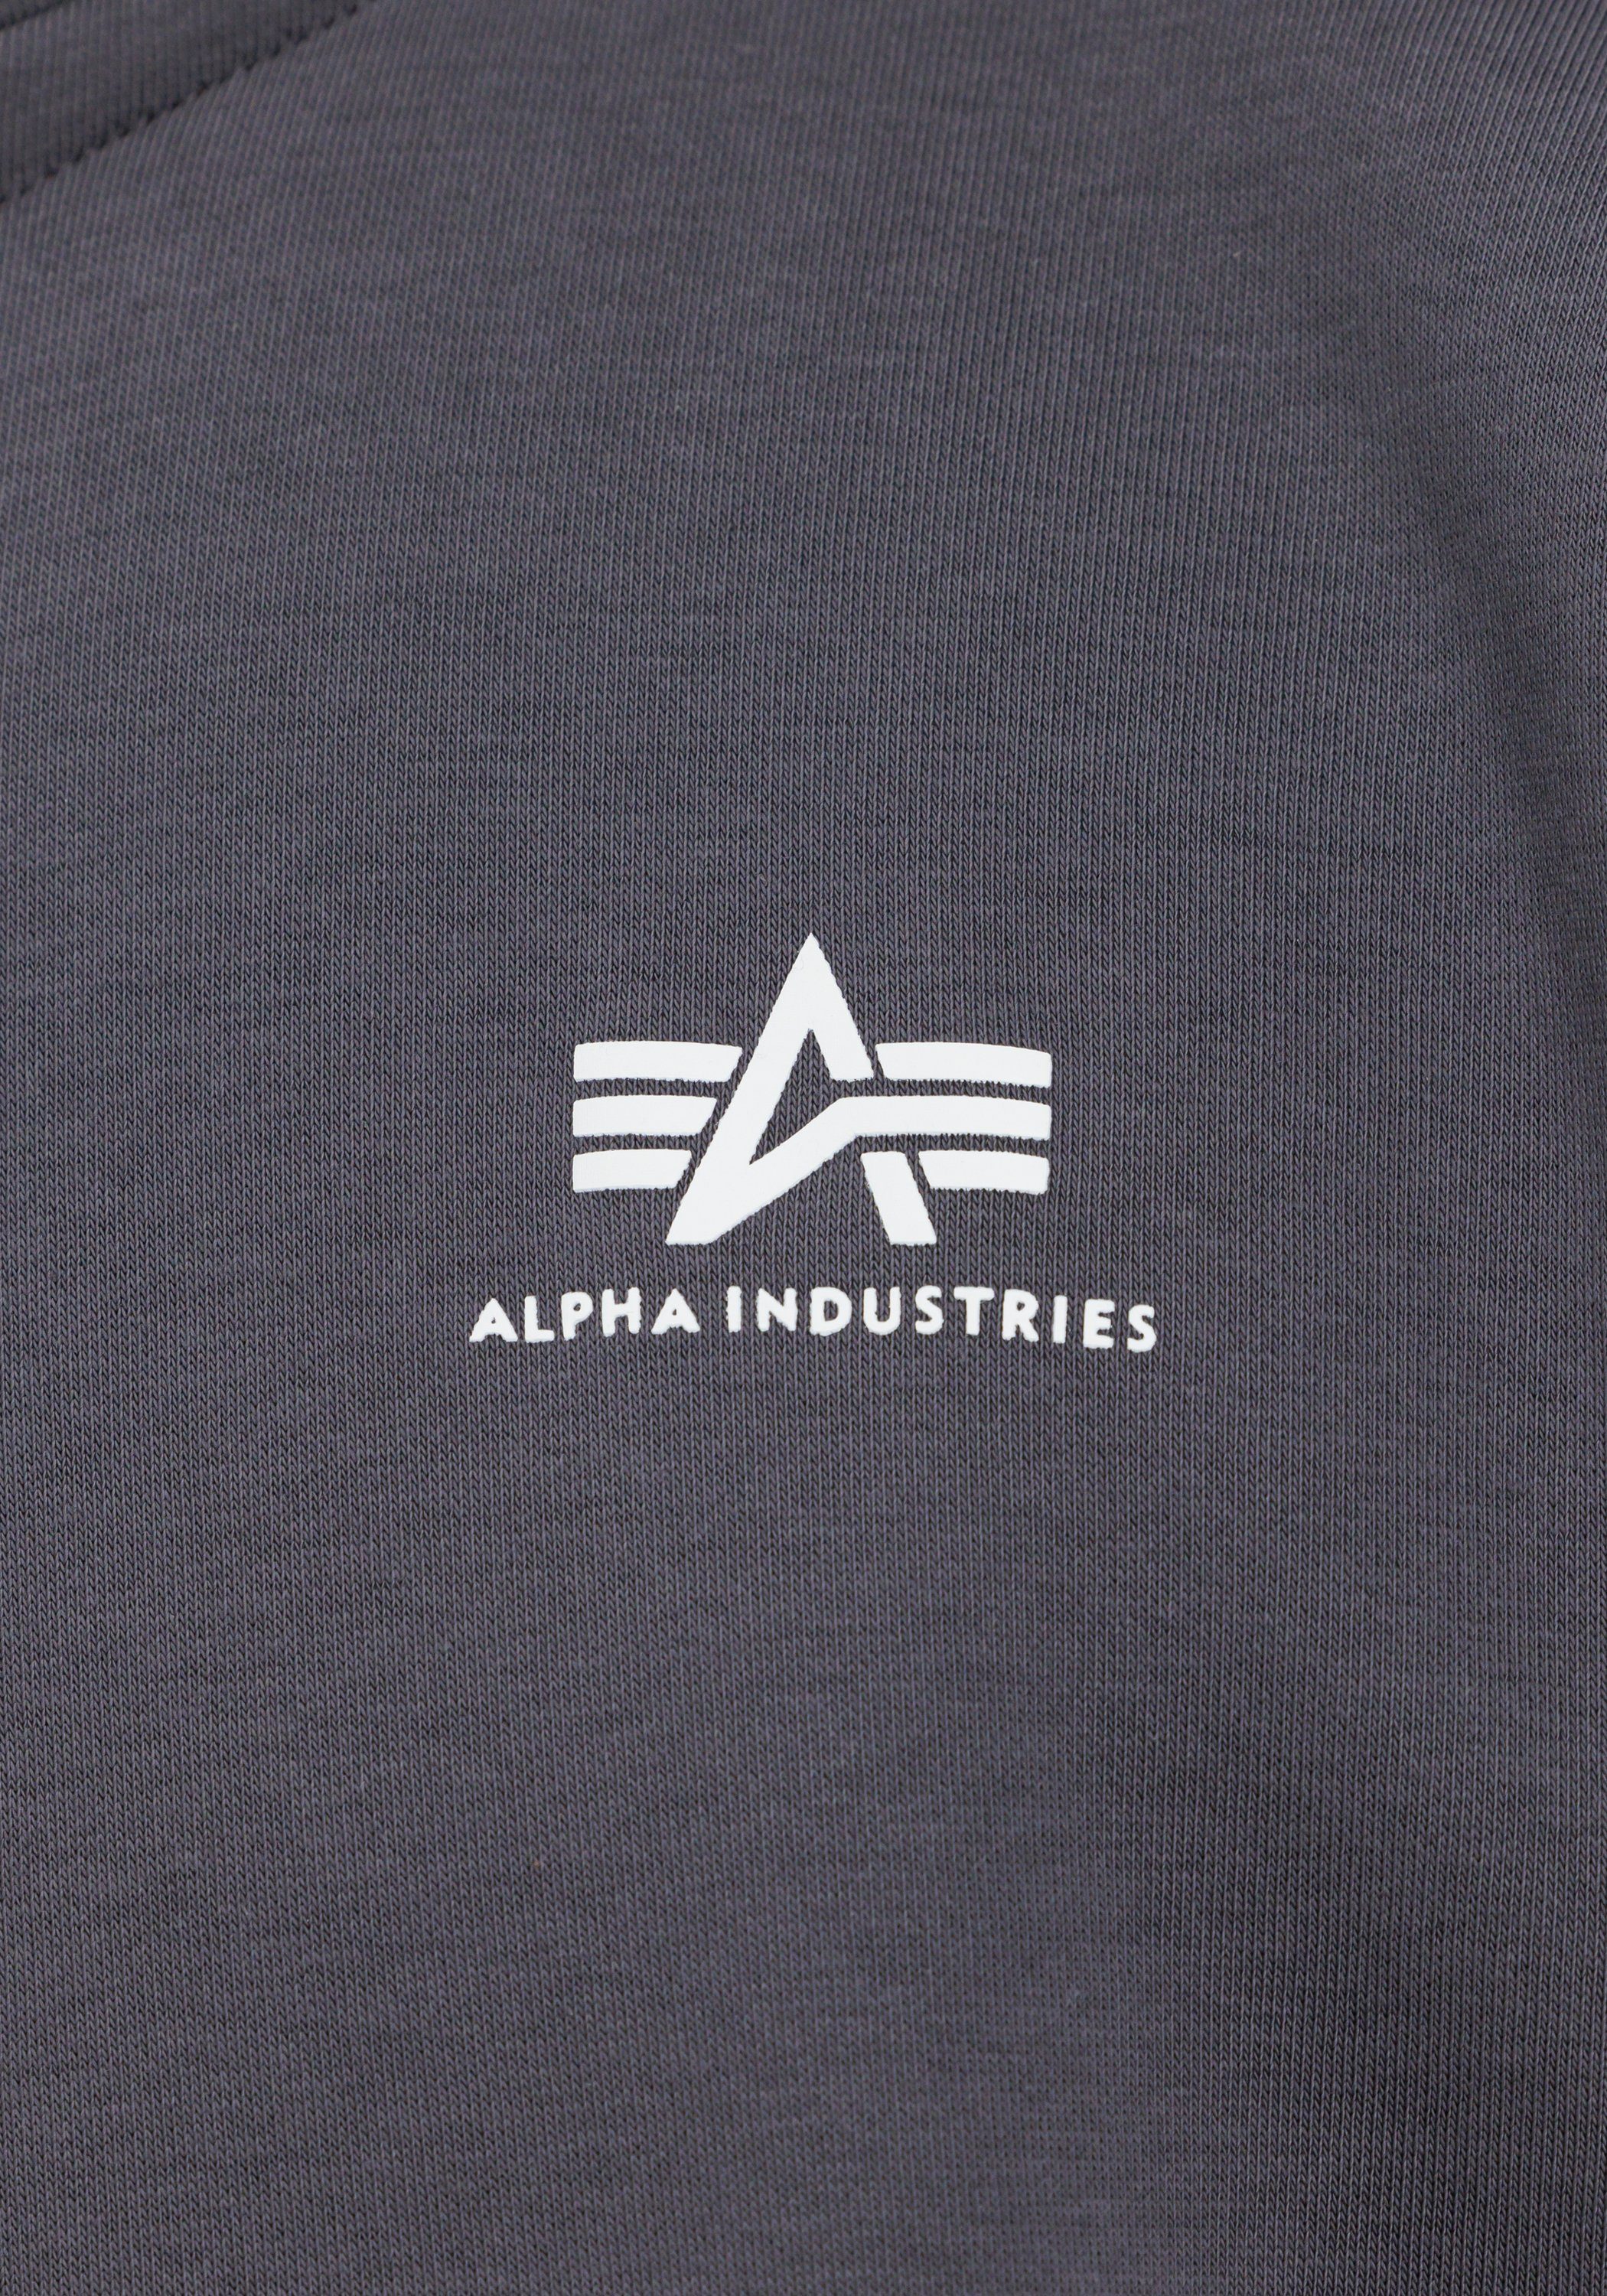 Sweater - Sweater black Industries SL Sweatshirts Men Industries Half Zip Alpha Alpha